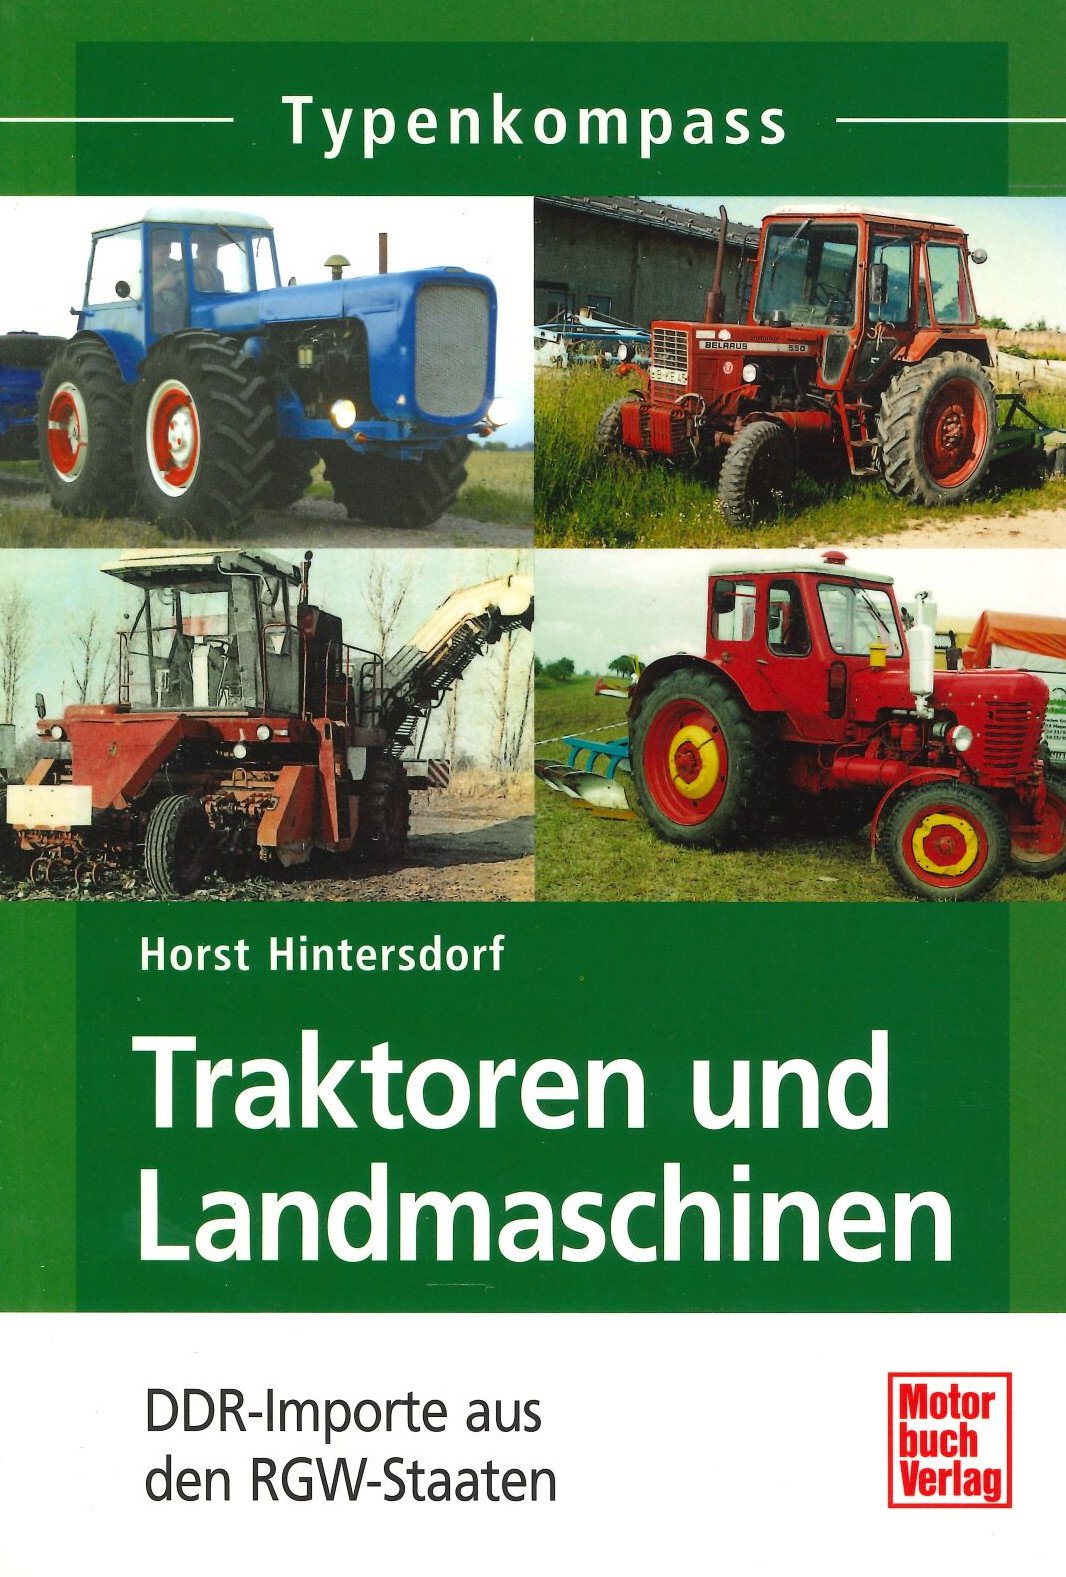 Typenkompass - Traktoren und Landmaschinen (Feuerwehrmuseum Grethen CC BY-NC-SA)